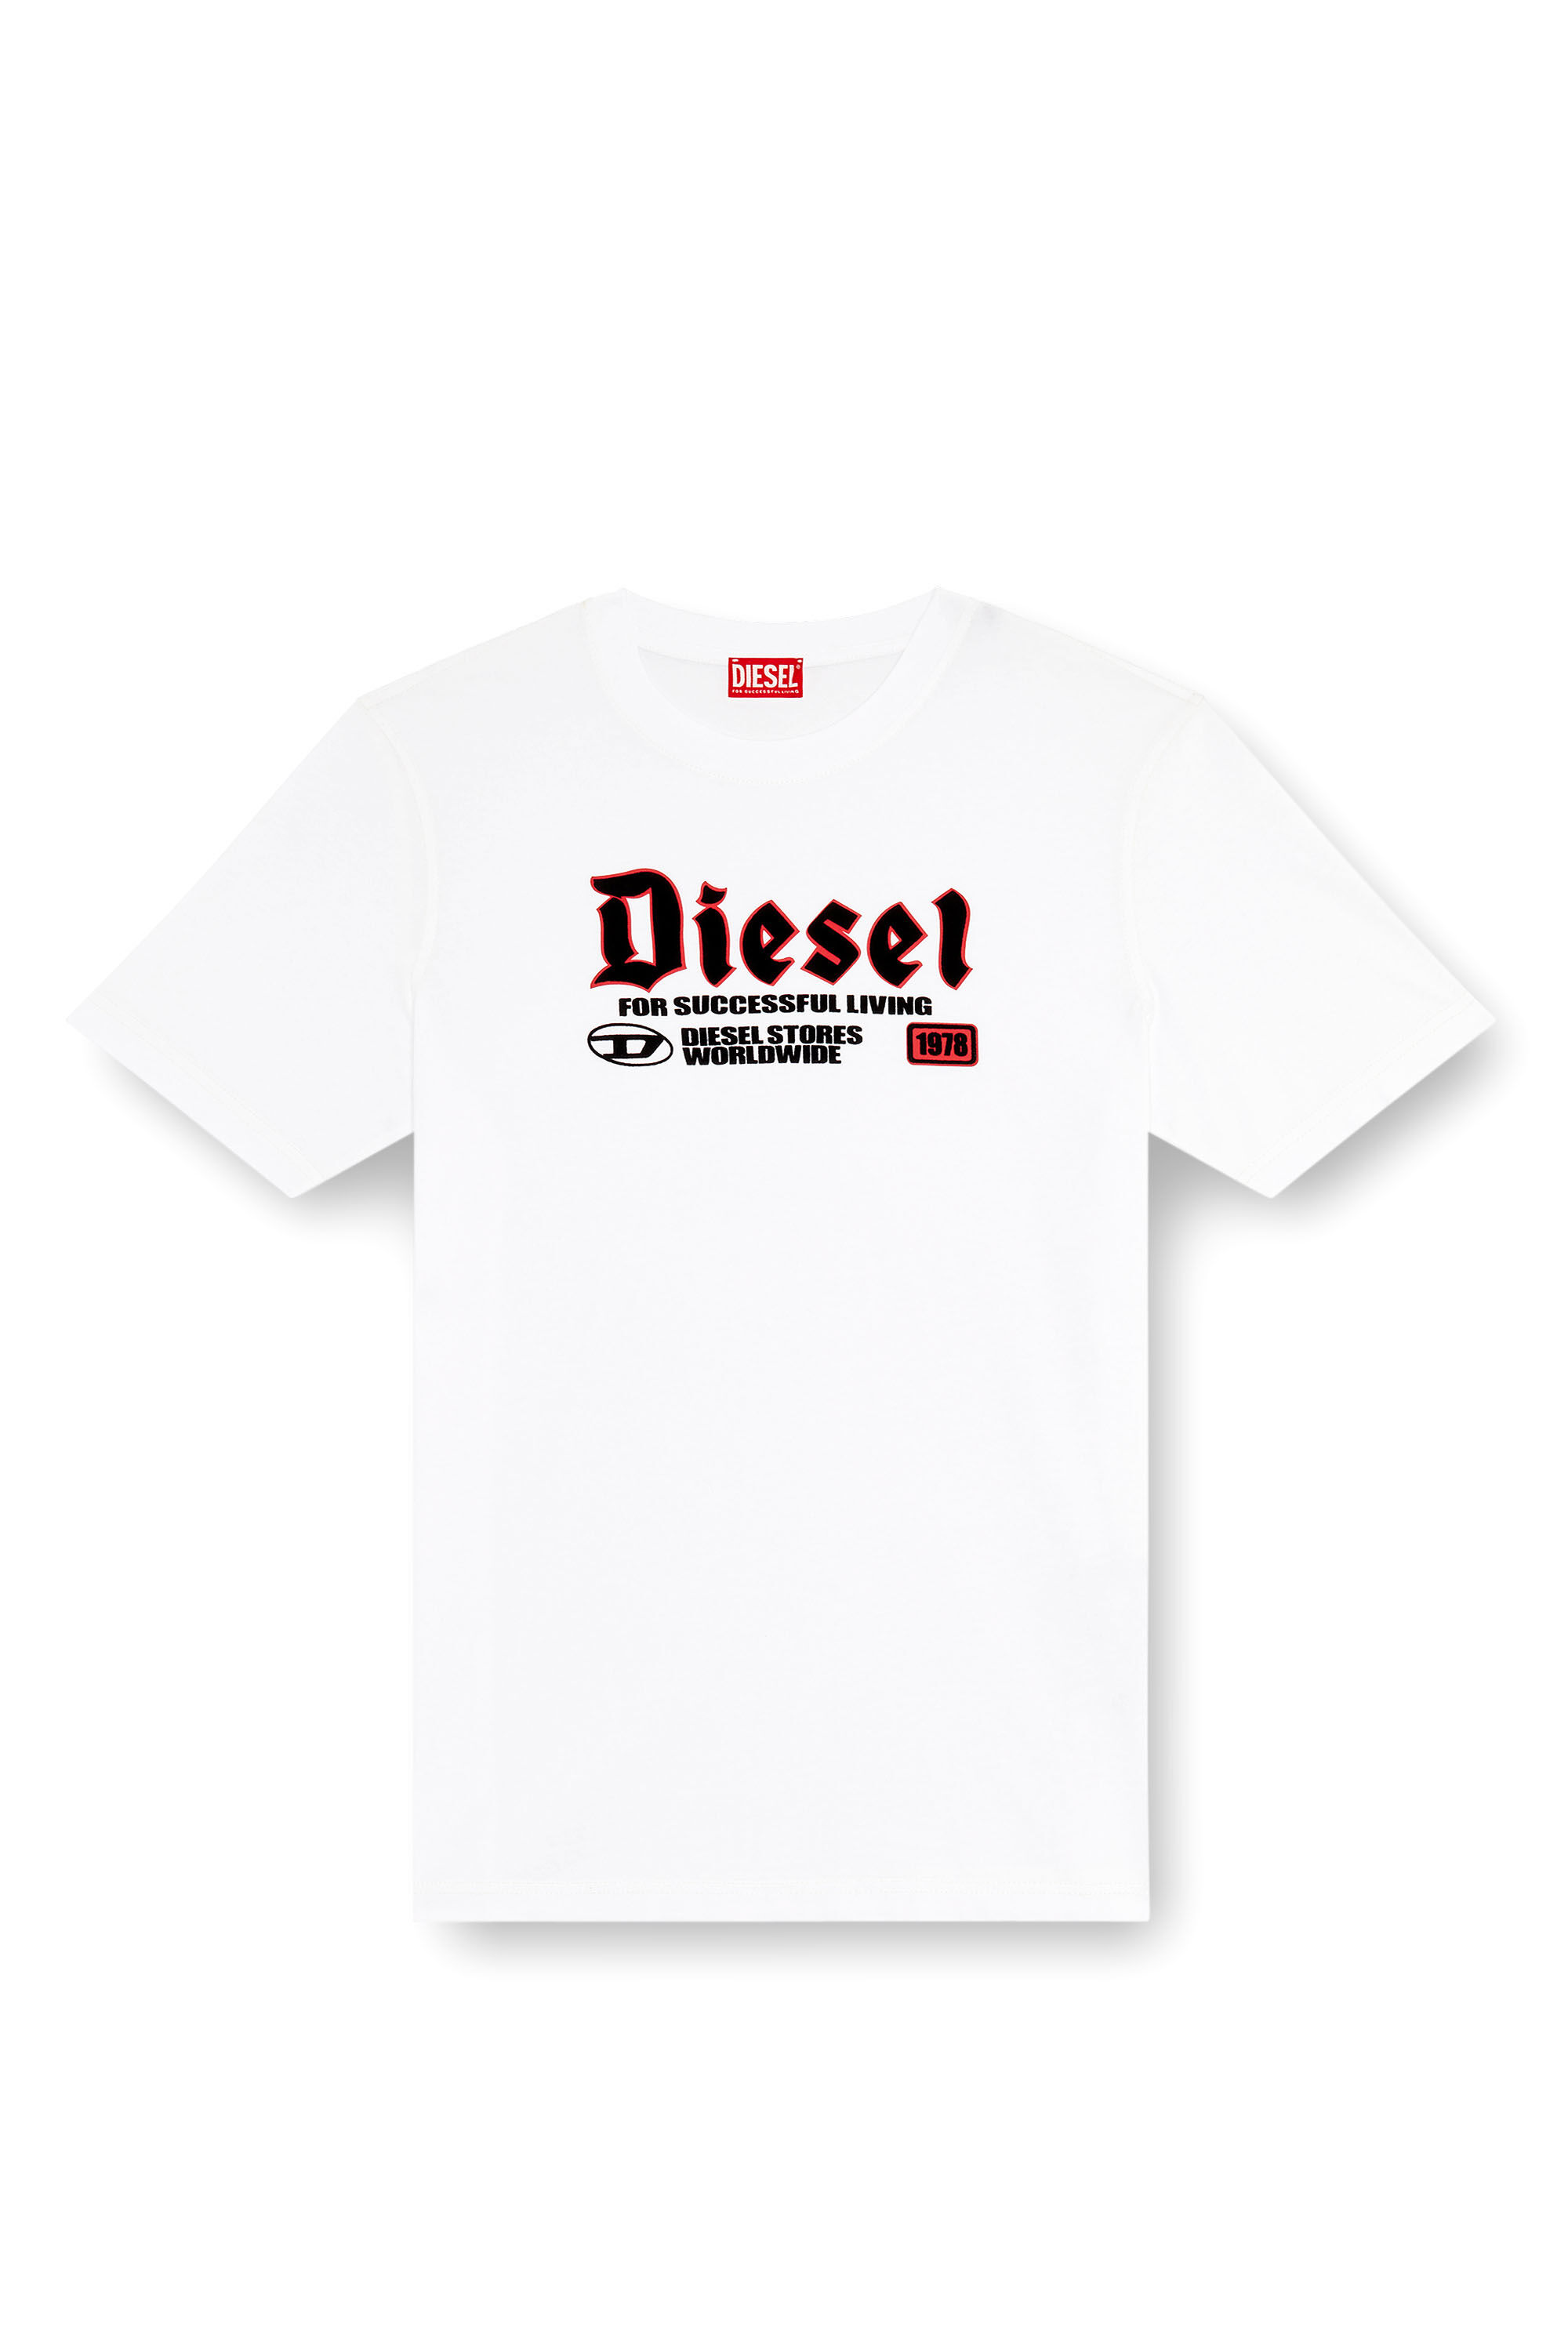 Diesel - T-ADJUST-K1, Homme T-shirt avec imprimé Diesel floqué in Blanc - Image 2